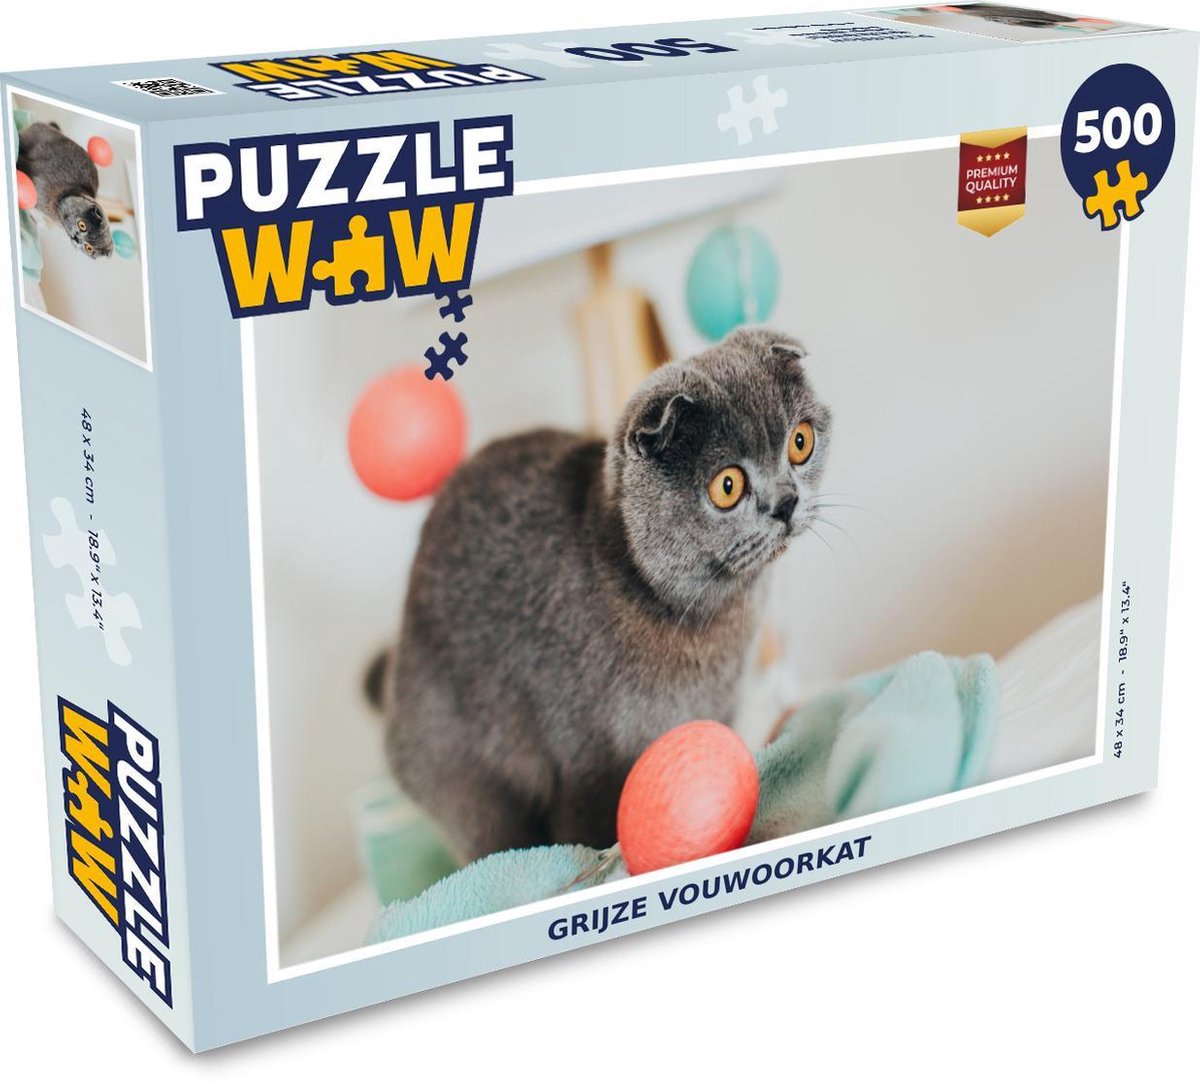 Afbeelding van product Puzzel 500 stukjes Schotse vouwoorkat - Grijze vouwoorkat - PuzzleWow heeft +100000 puzzels